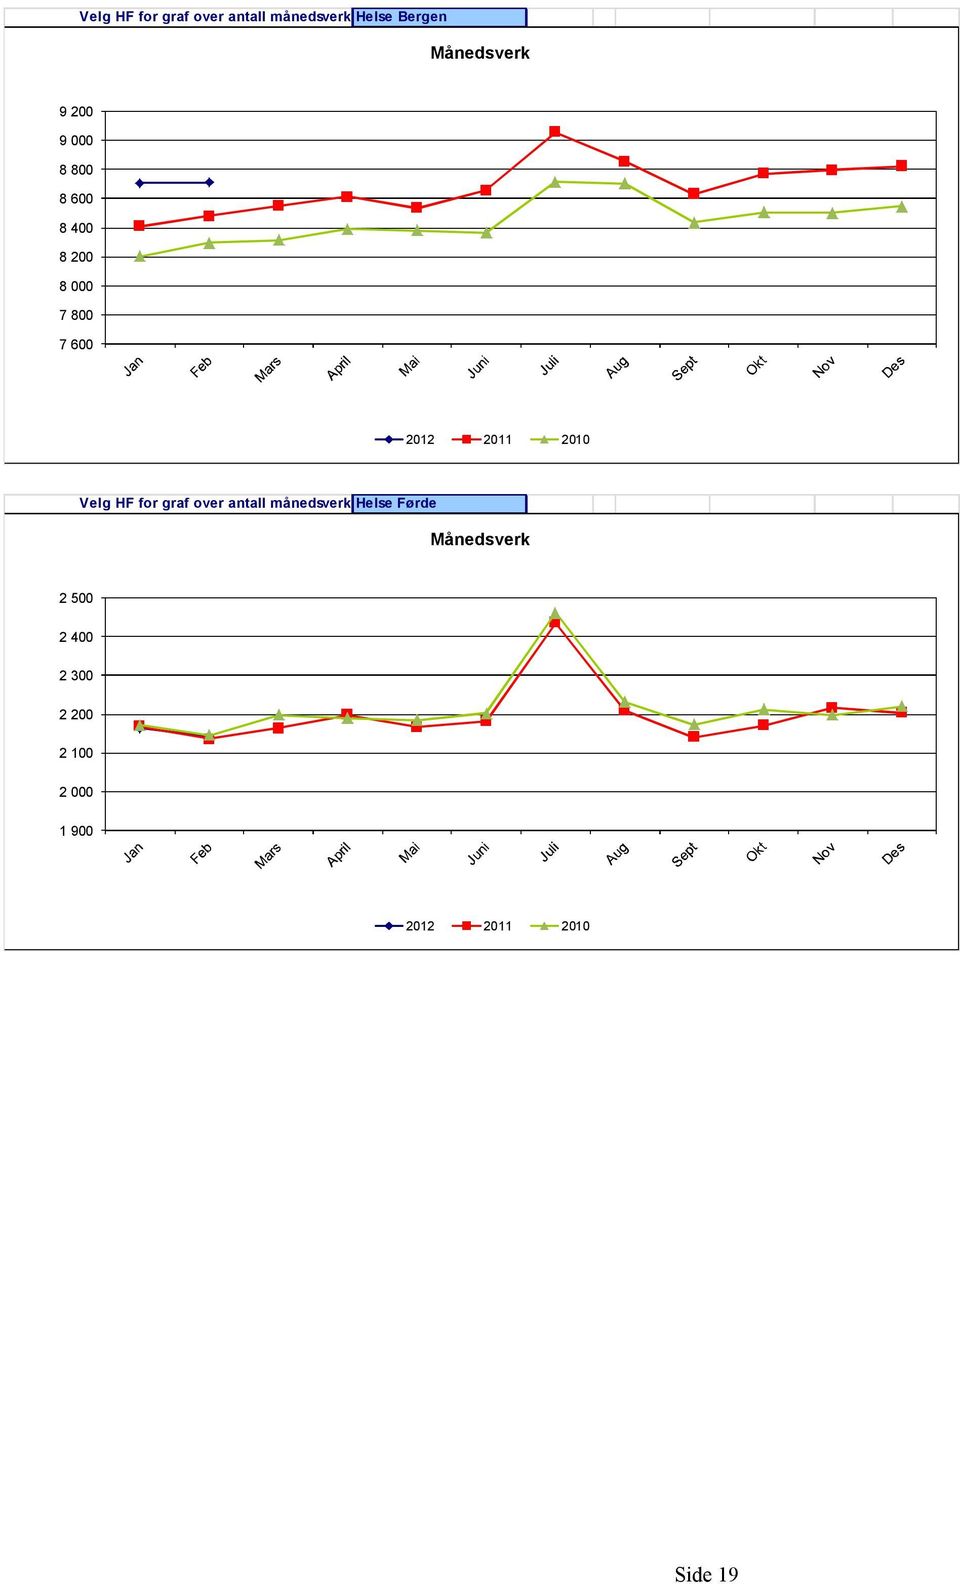 2010 Velg HF for graf over antall månedsverk Helse Førde